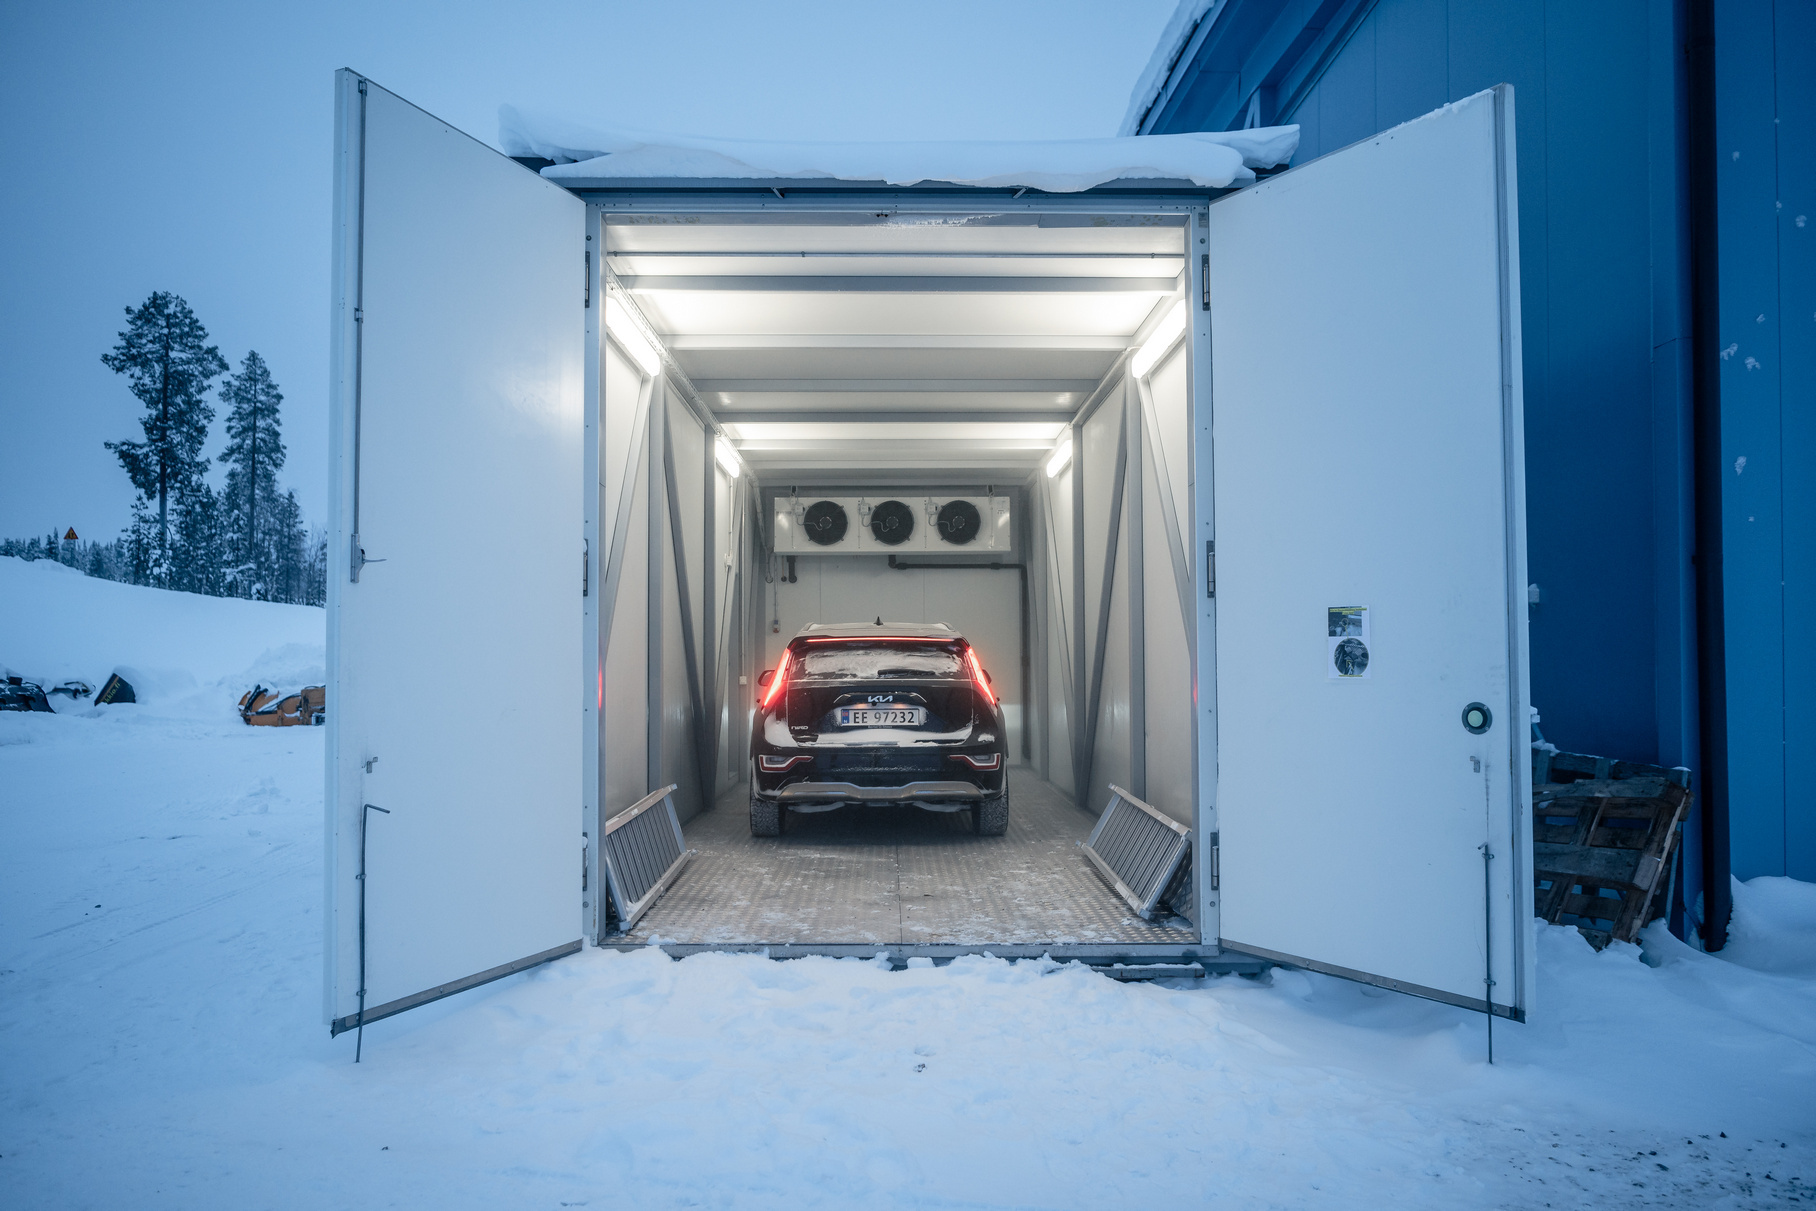 Для испытания морозом все электромобили поместили в климатические камеры на заполярном полигоне Lapland Proving Ground в Финляндии. Температура в этих боксах поддерживалась на уровне 40 градусов ниже нуля